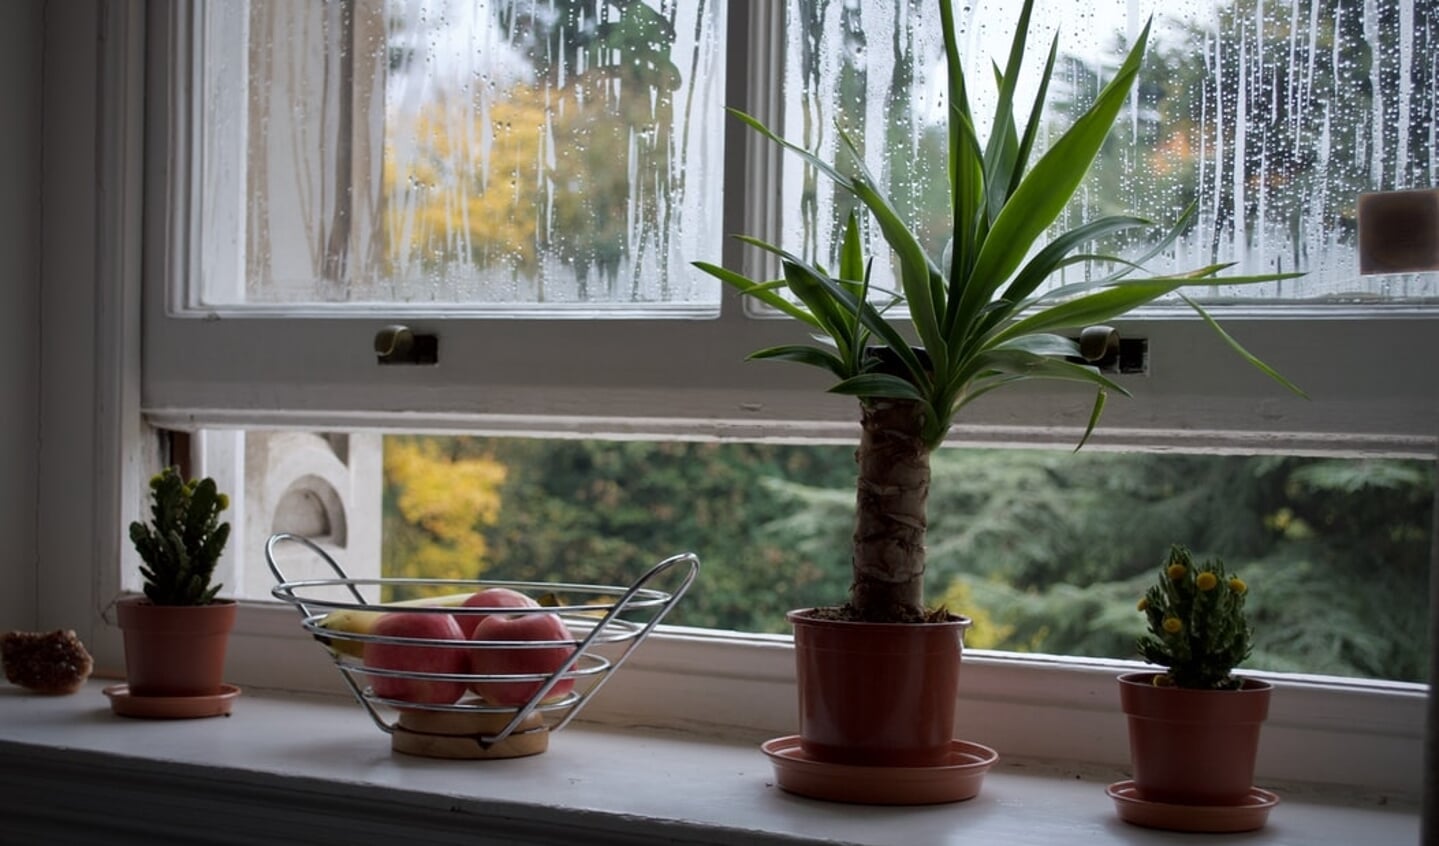 Door het raam open te doen, verbeter je de luchtkwaliteit in huis